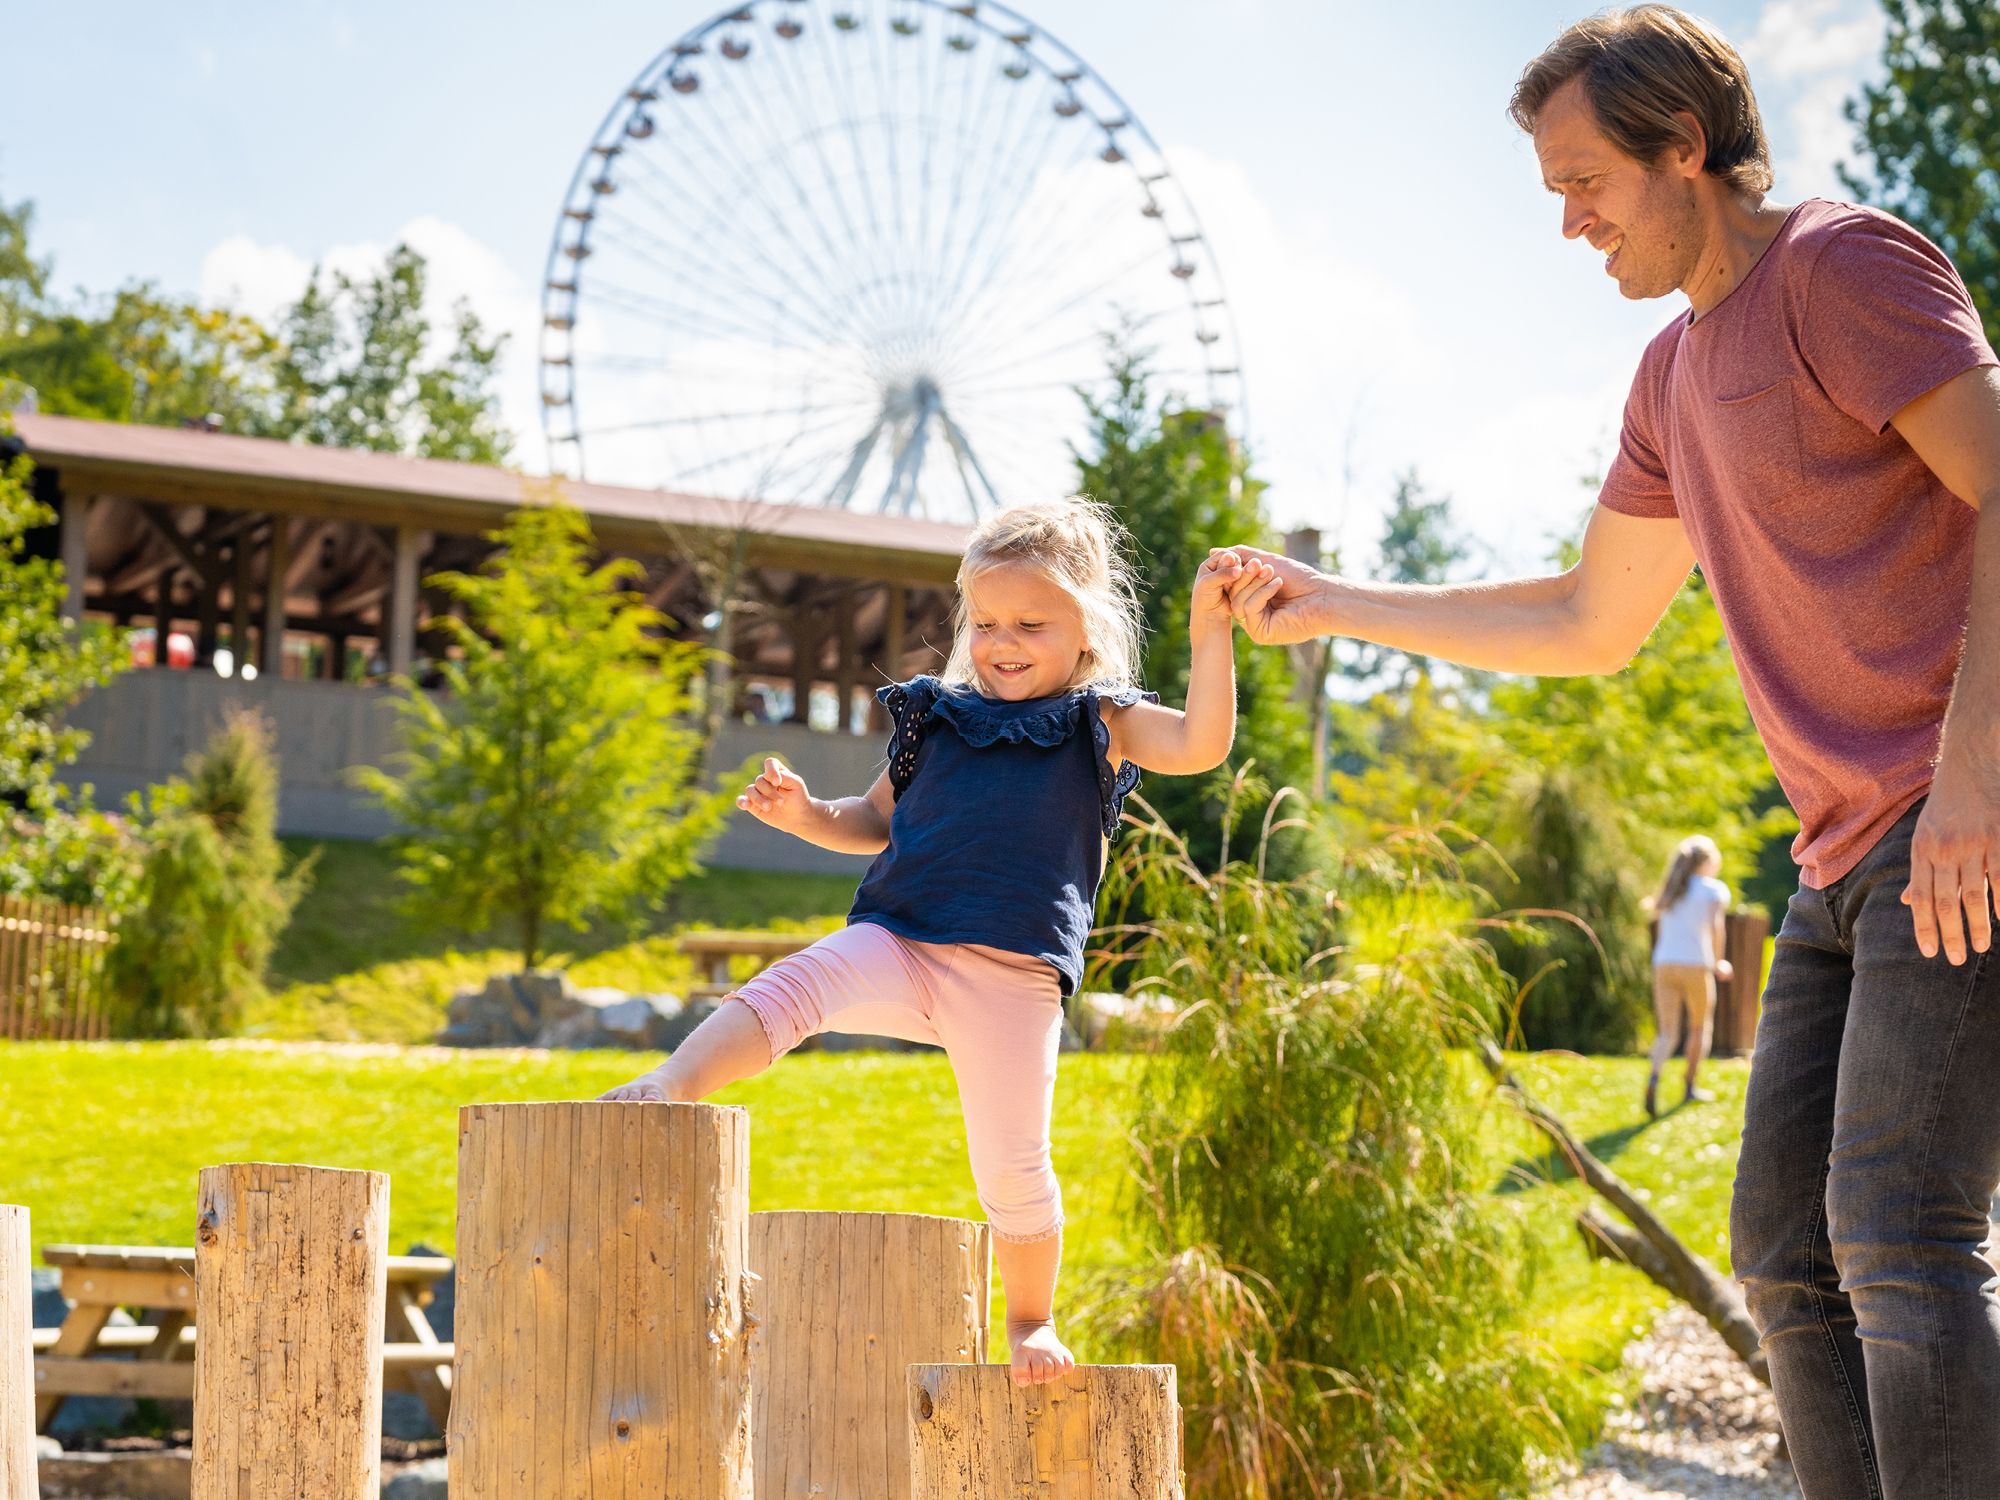 In der Adventure Area mit dem Riesenrad im Hintergrund probiert ein kleines Mädchen auf Baumstämmen zu laufen und der Papa hilft ihr dabei.